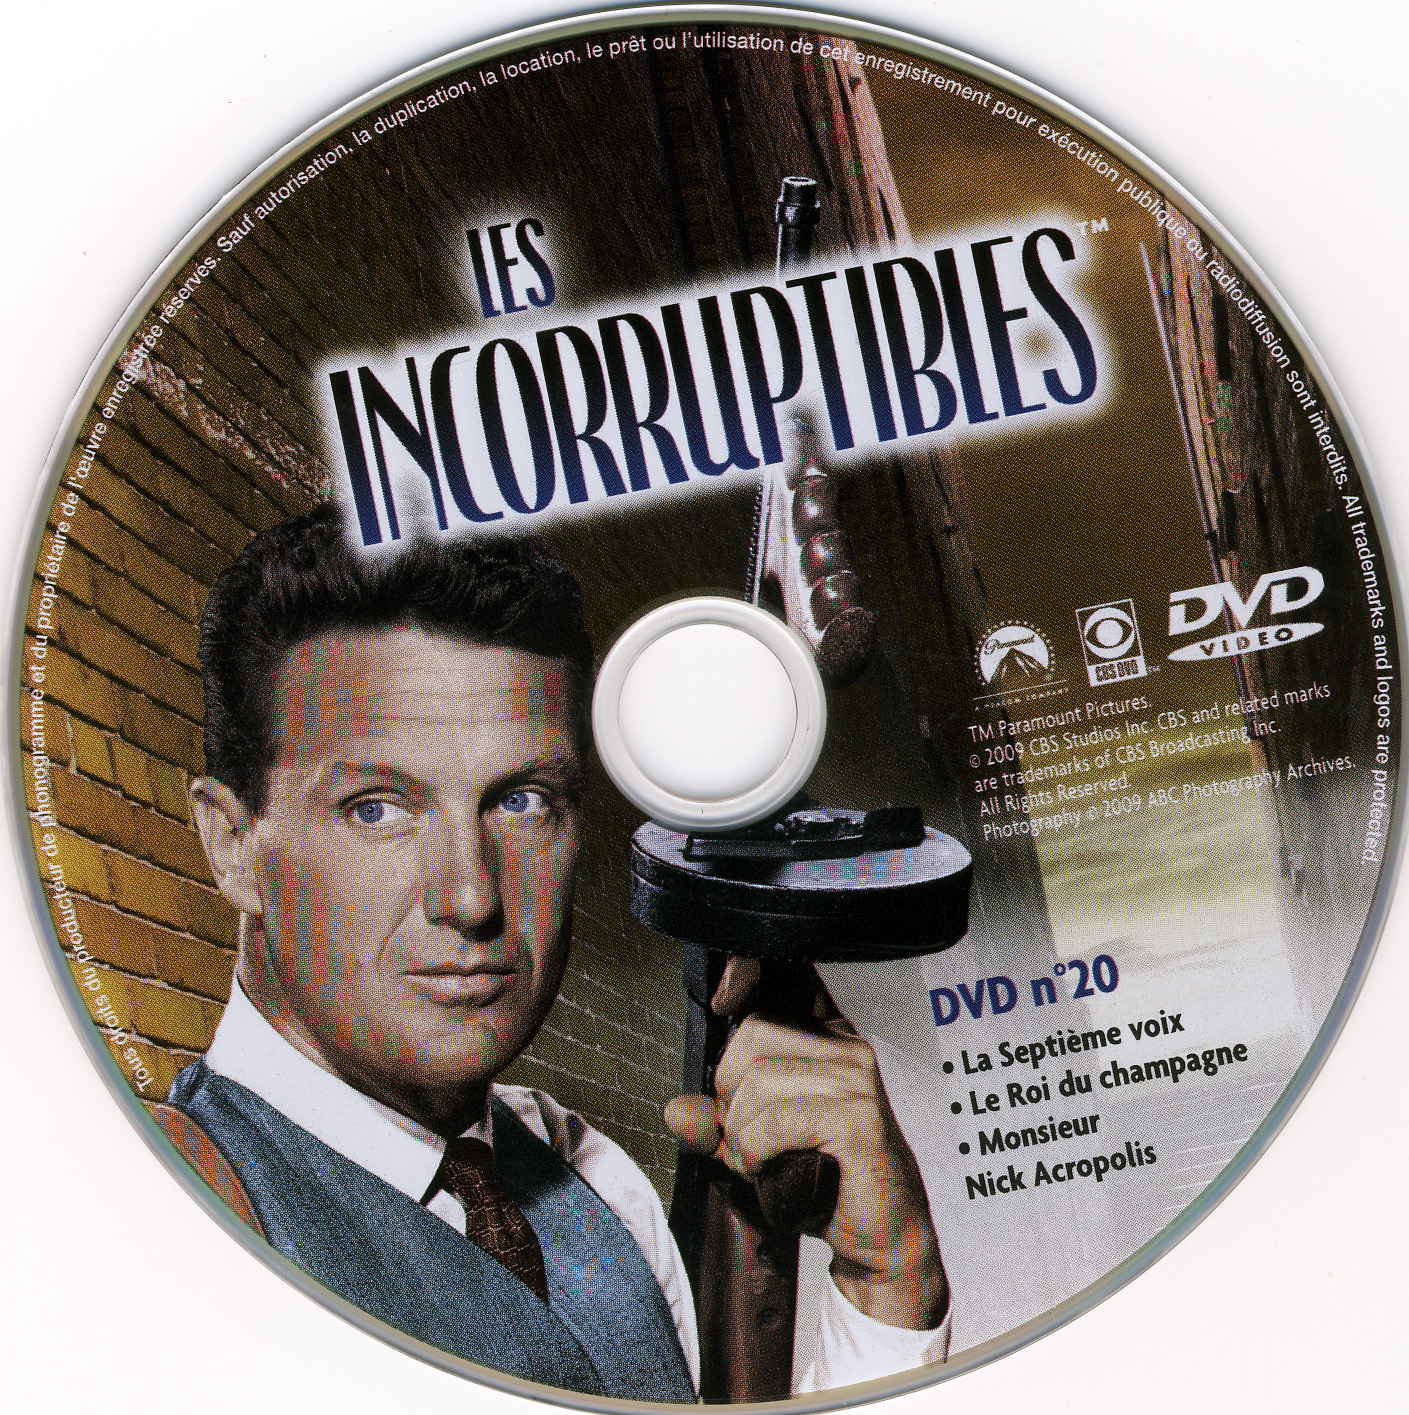 Les incorruptibles intgrale DVD 20